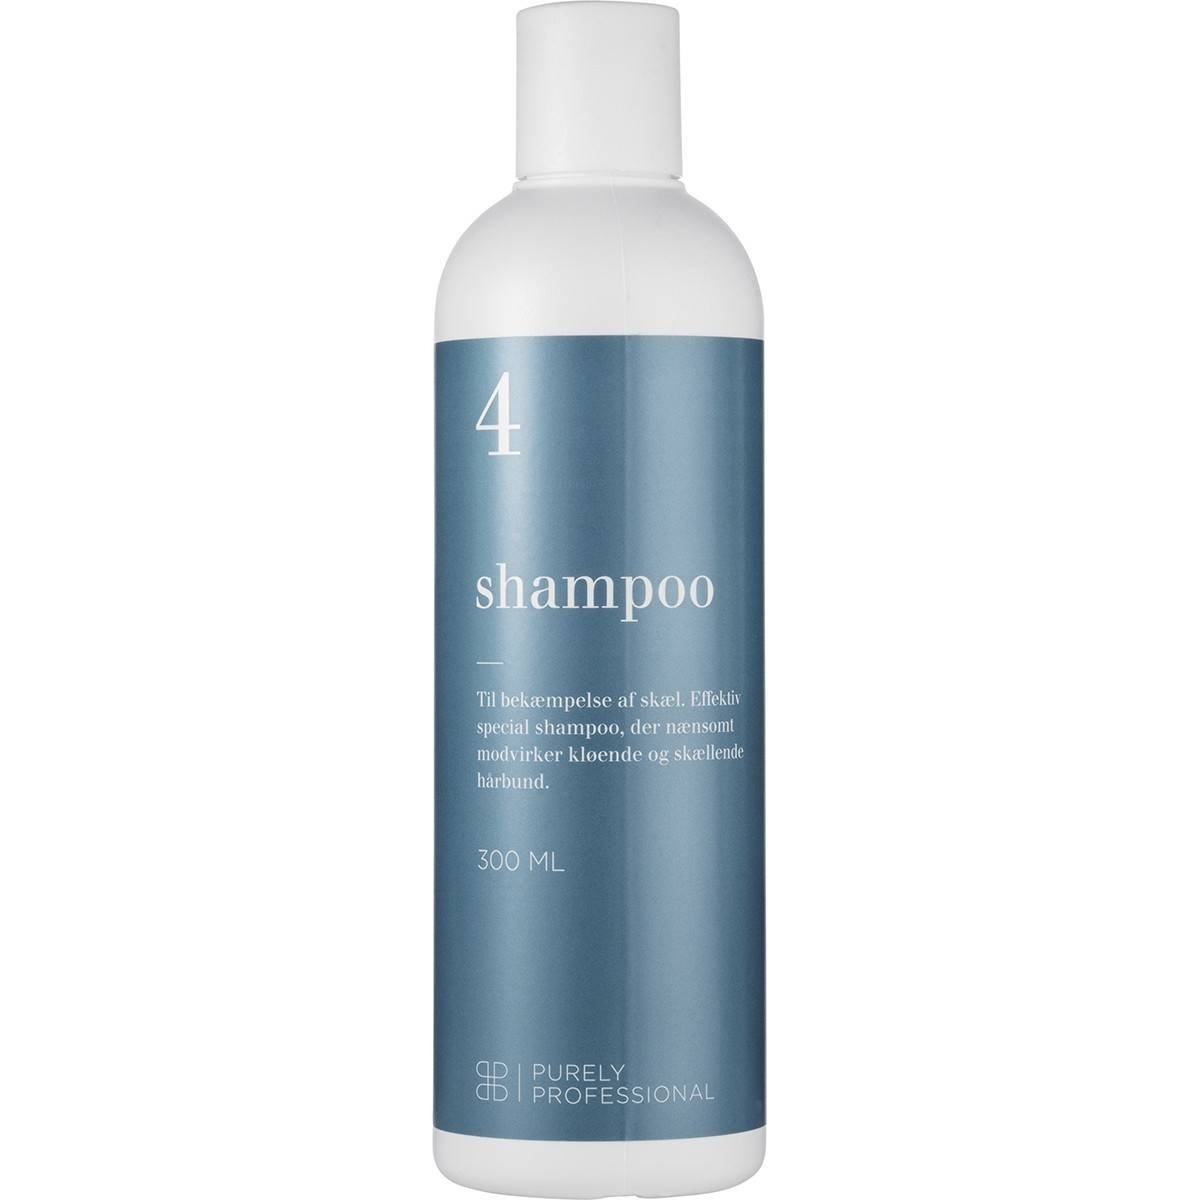 Purely Professional Shampo 4 Skælshampo til irriteret hovedbund300 ml.